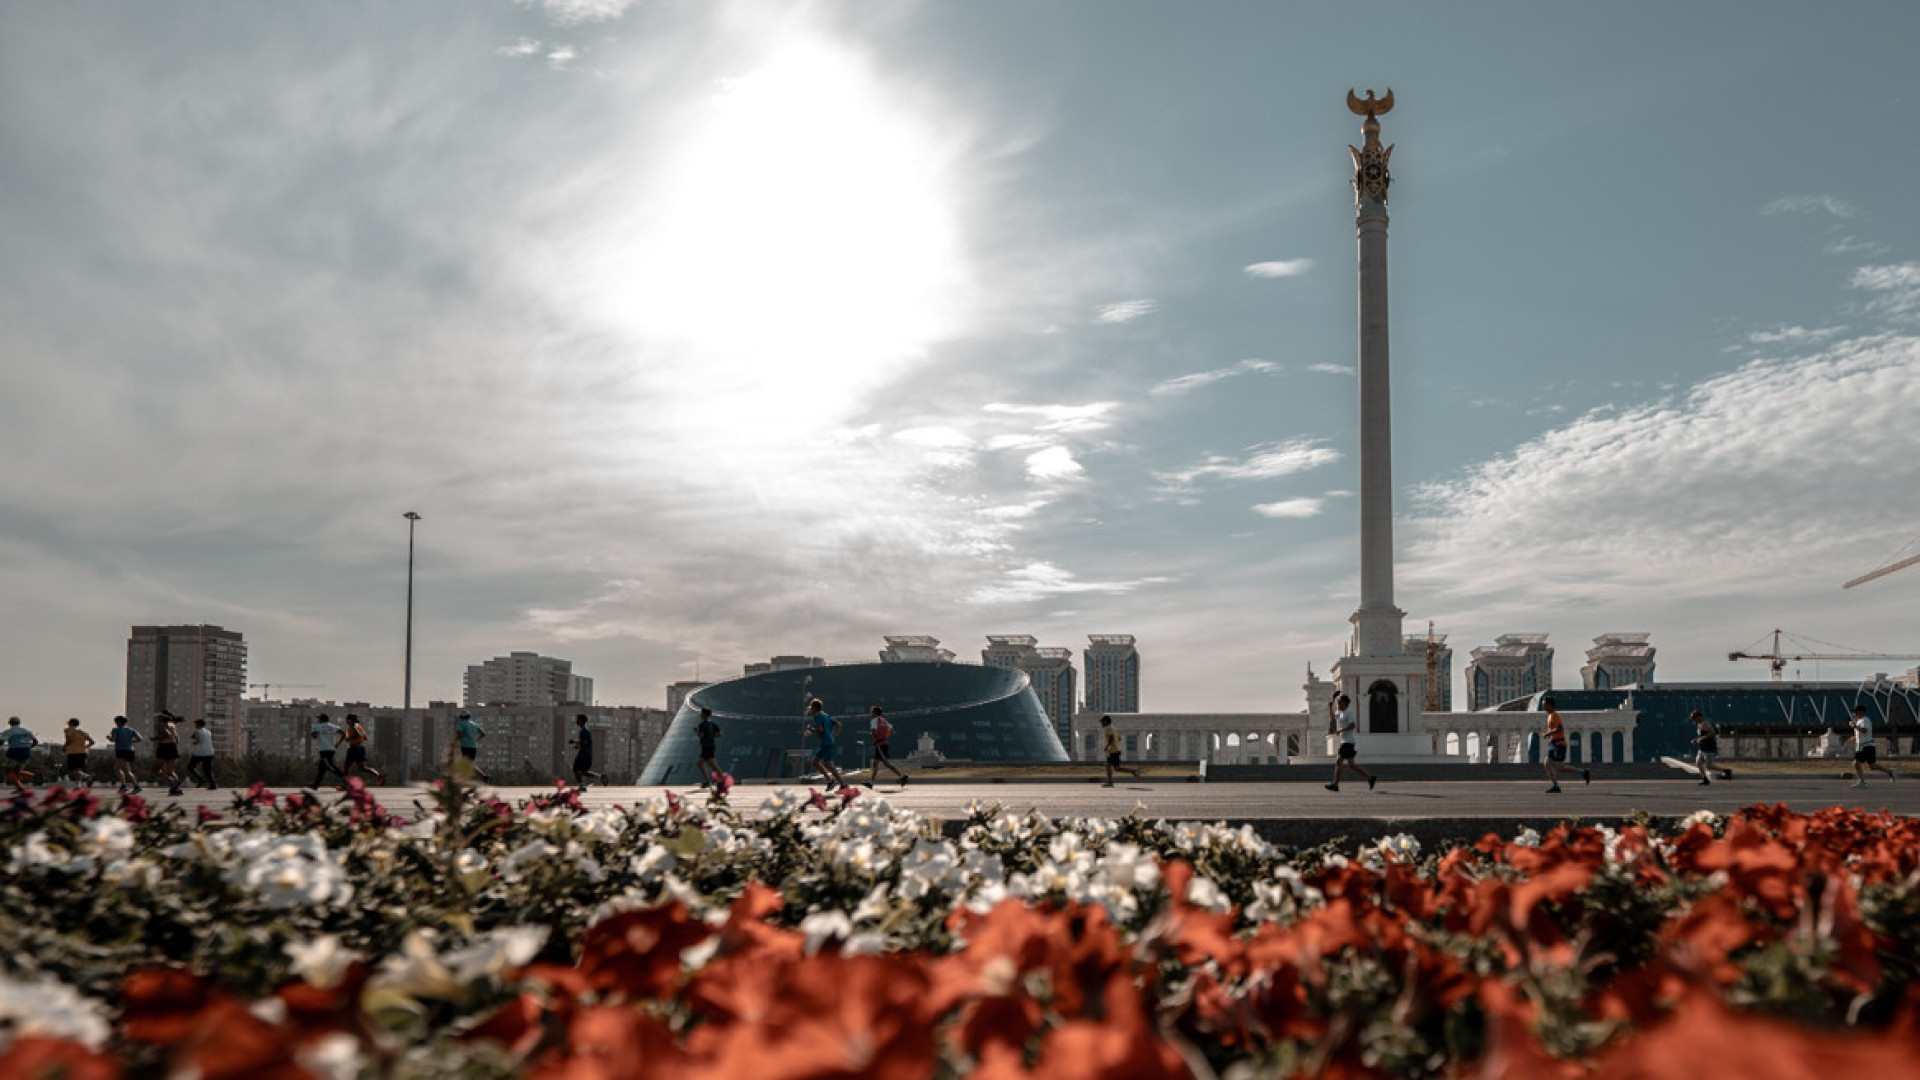 Аким Касымбек: Астана на грани перенаселения!